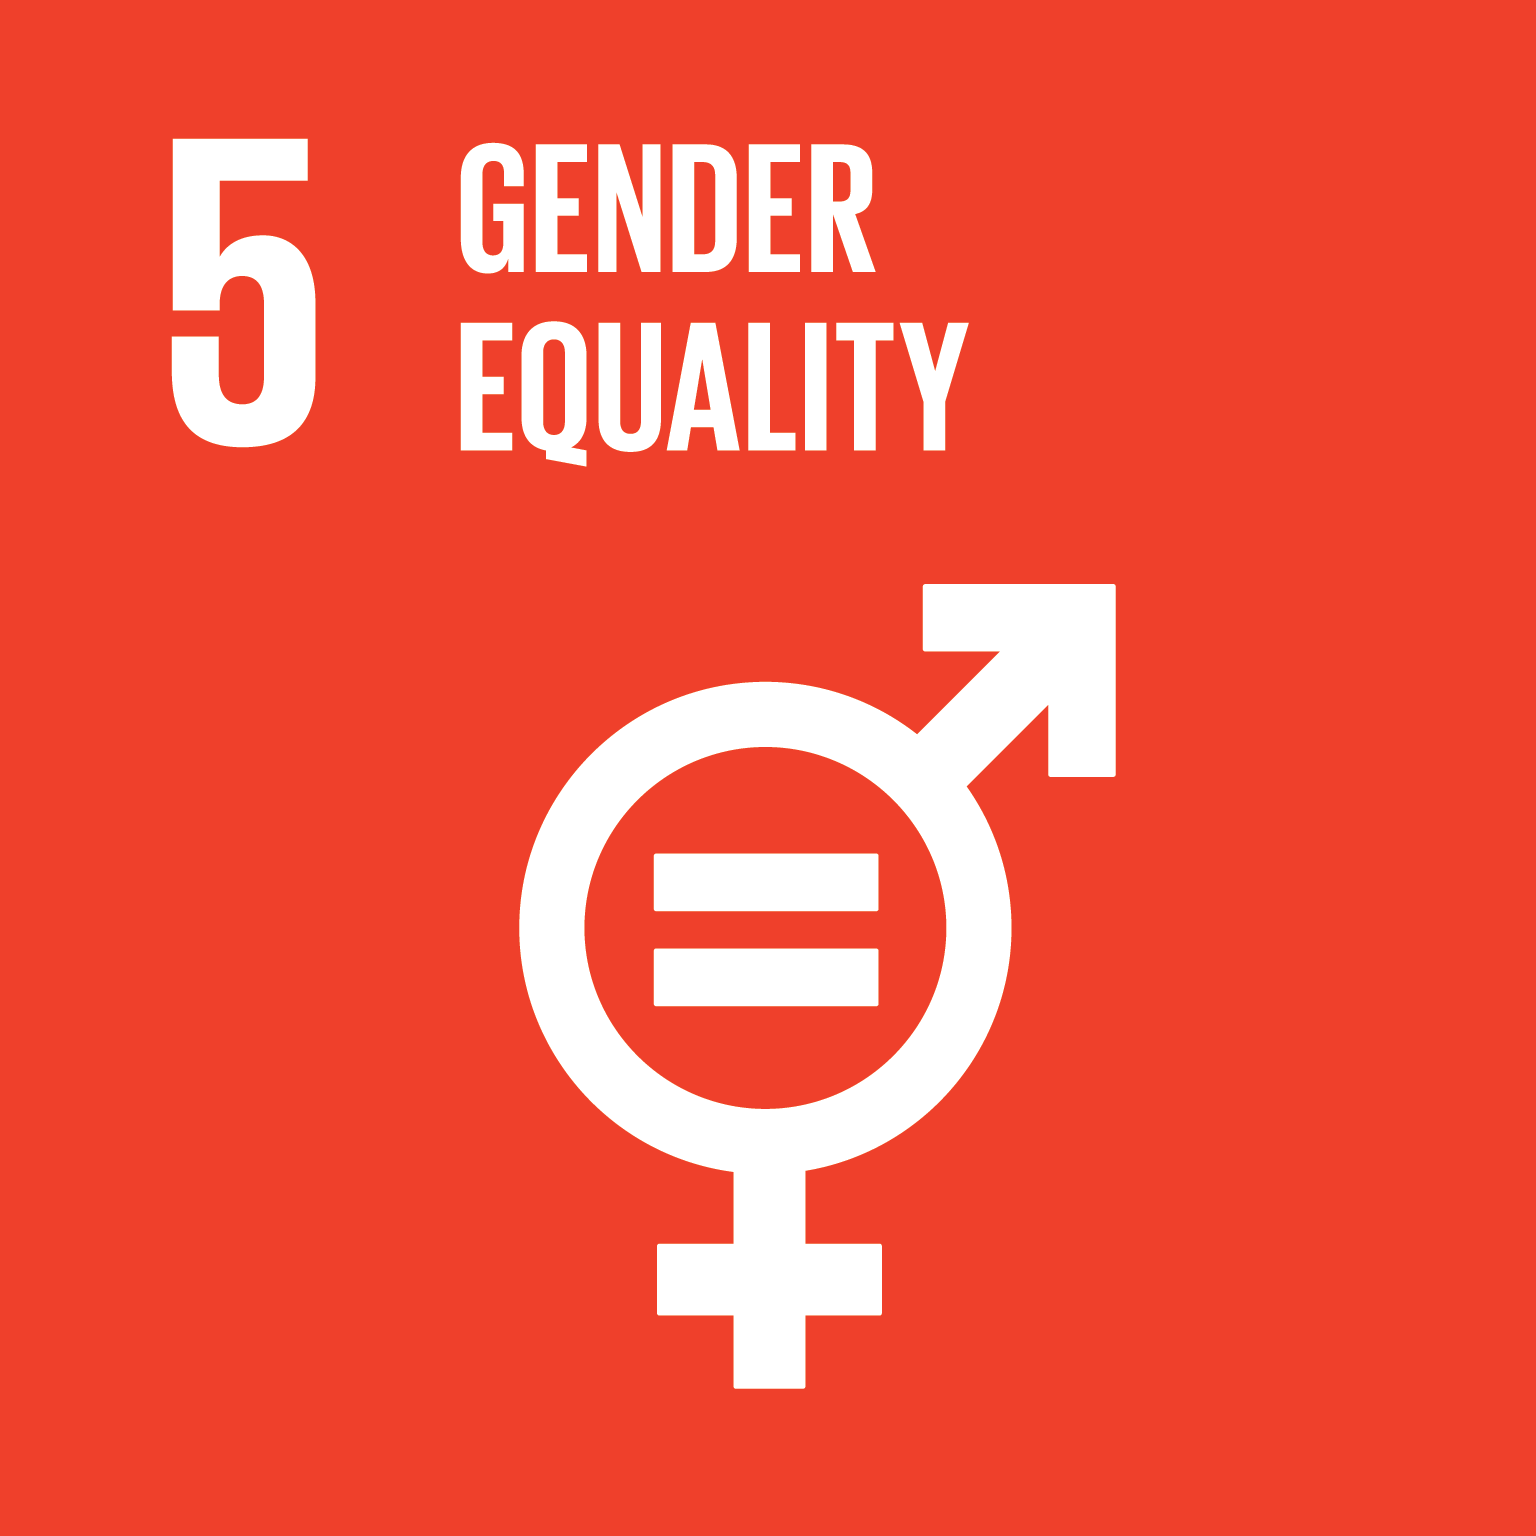 SDG Gender Equality - Better Bearings Purpose